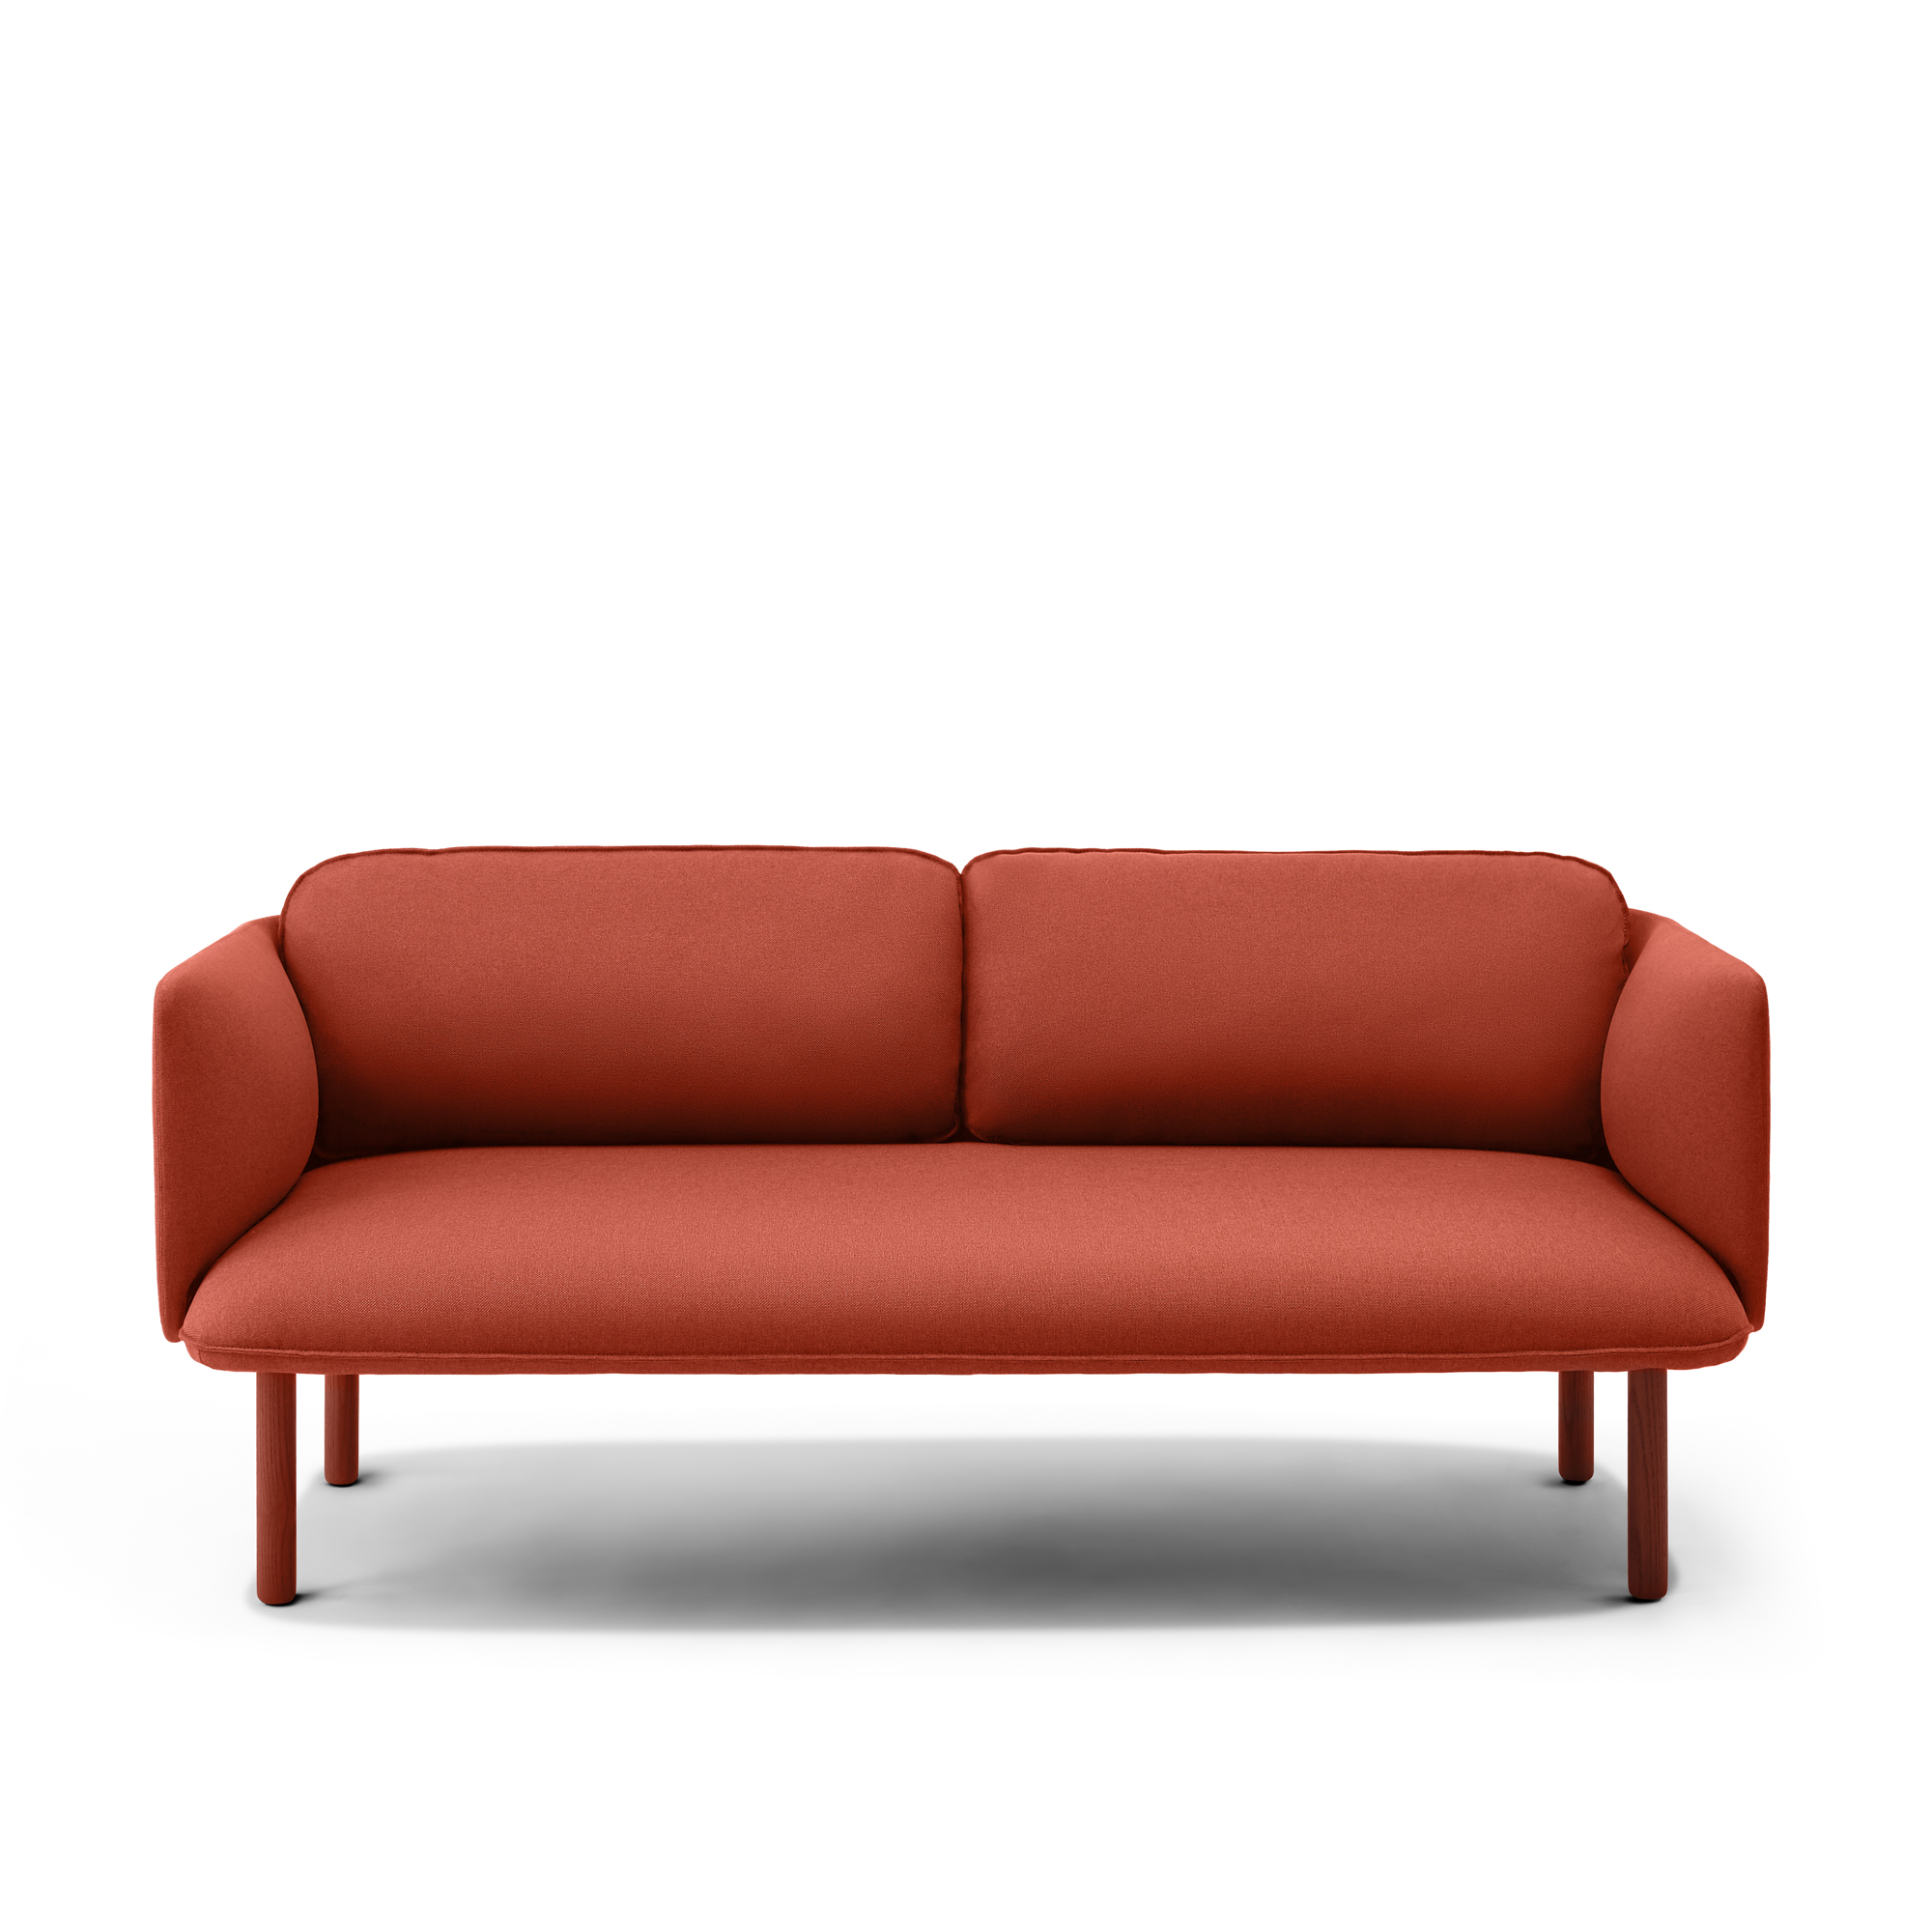 Brick QT Low Lounge Sofa,Brick,hi-res